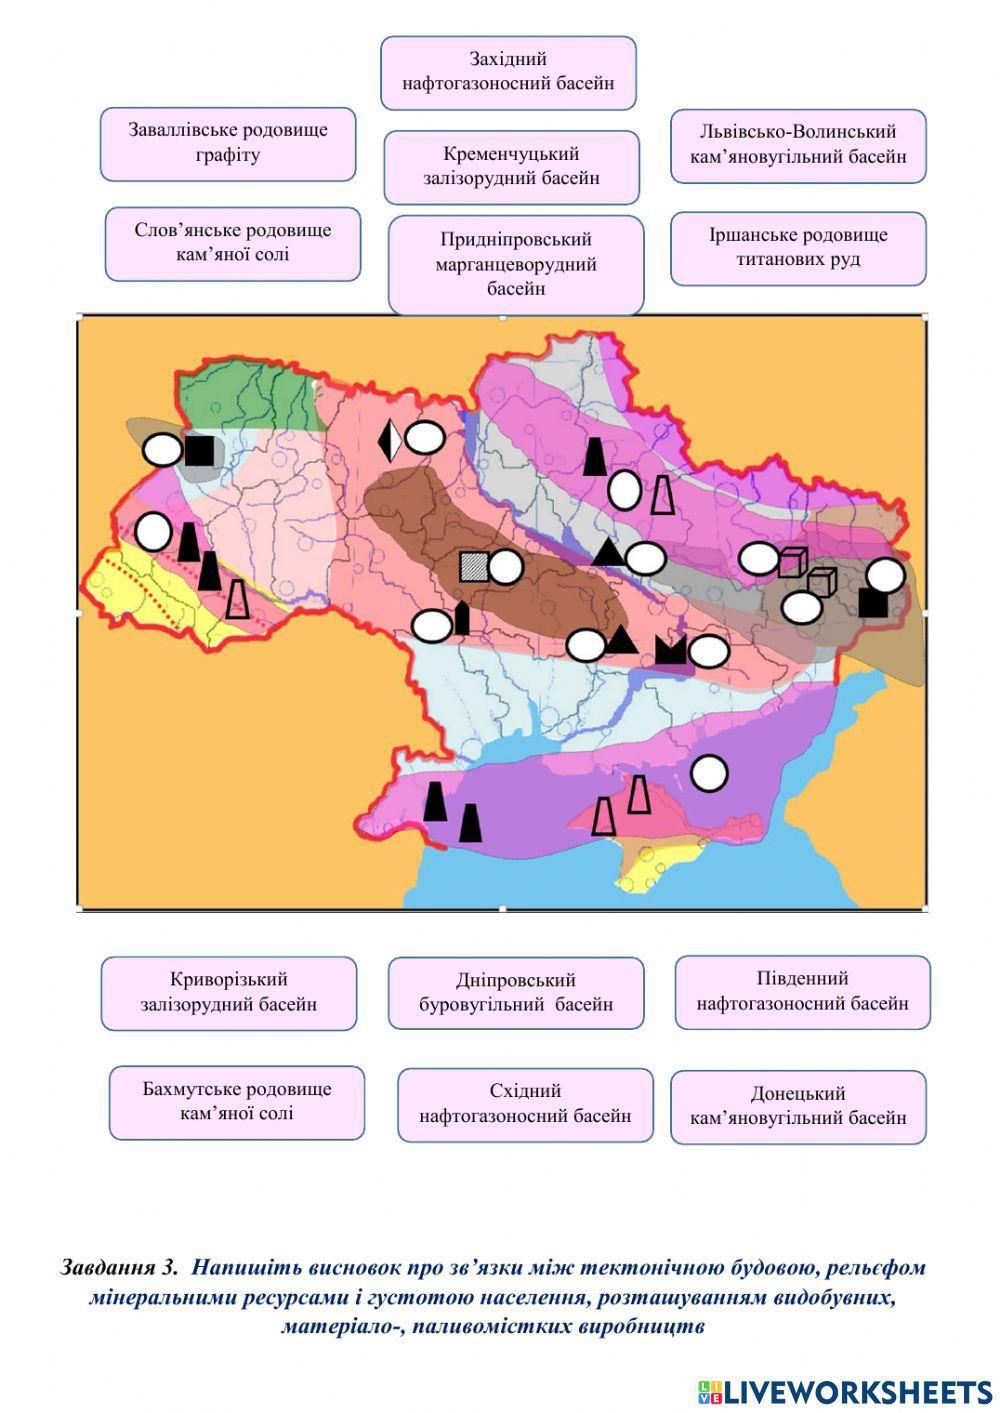 Встановлення за тематичними картами України зв’язків між тектонічною будовою, рельєфом мінеральними ресурсами і густотою населення